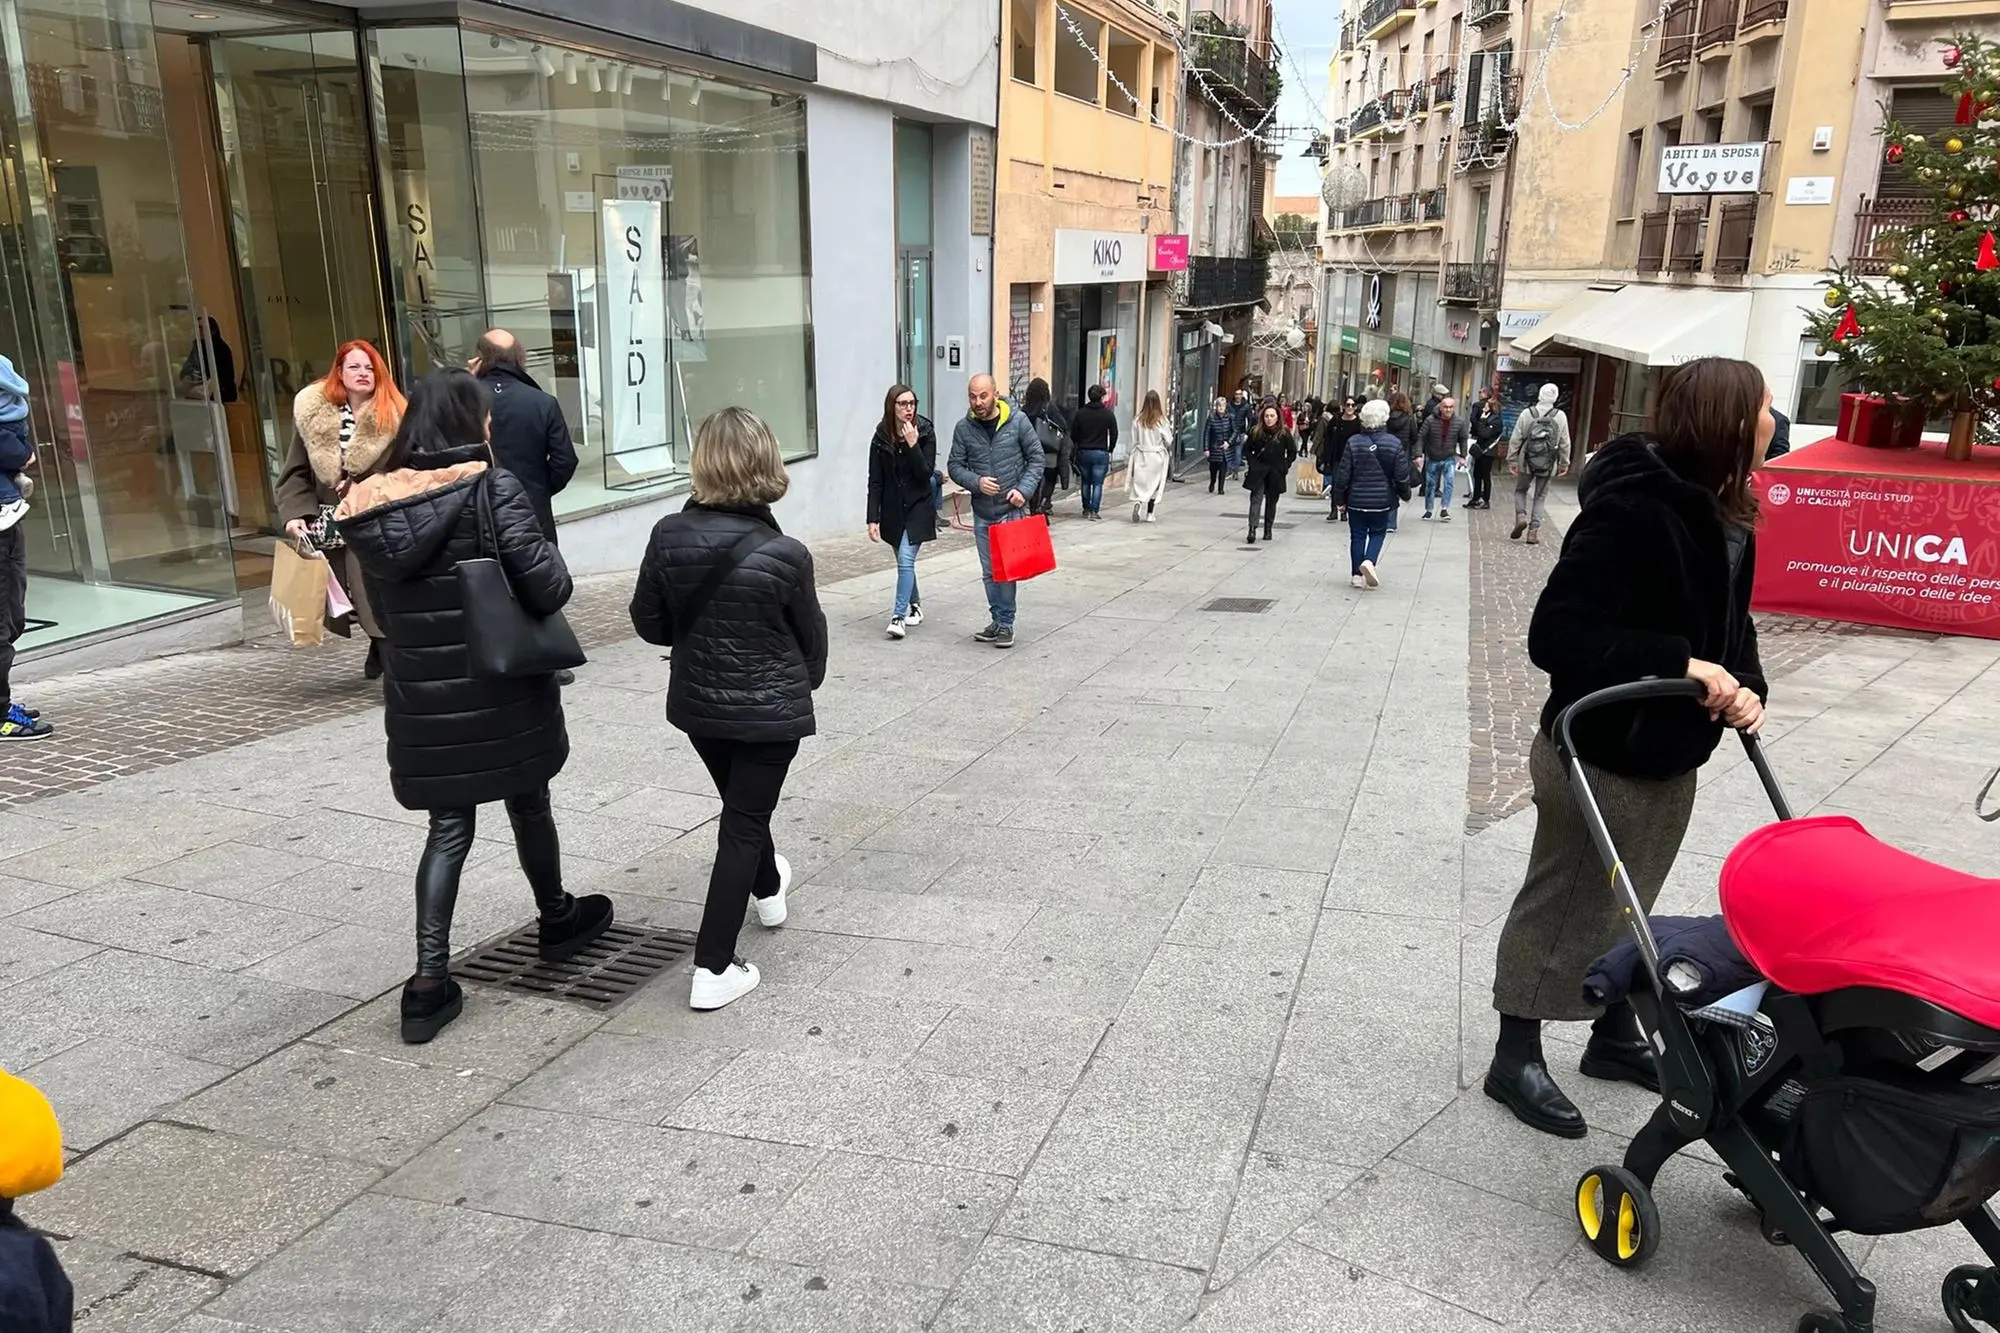 Una delle vie dello shopping a Cagliari (foto Madeddu)